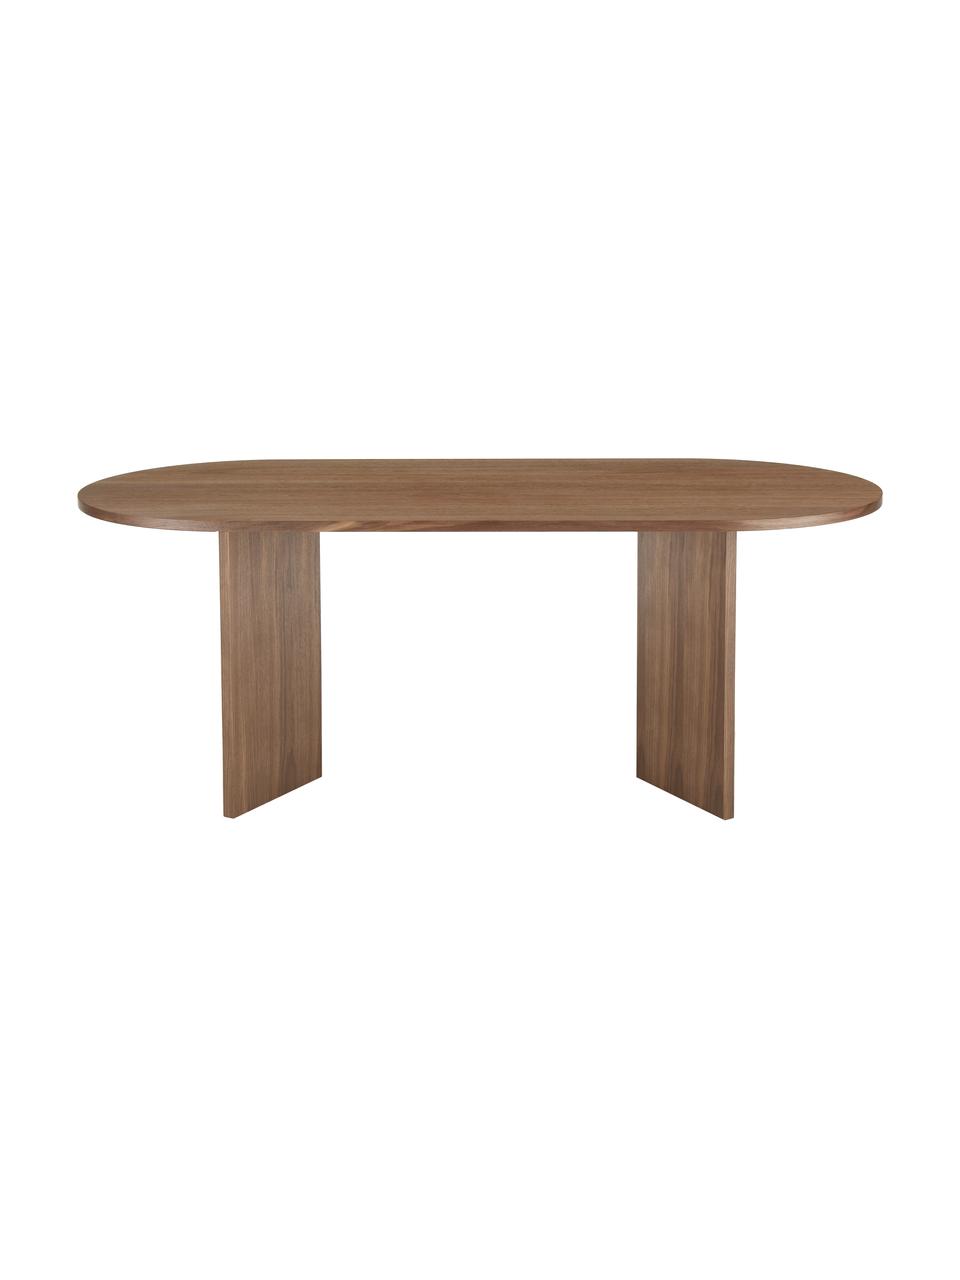 Tavolo ovale in legno Toni, 200x90 cm, Pannello di fibra a media densità (MDF) con finitura in noce laccato, Finitura in legno di noce, Larg. 200 x Prof. 90 cm